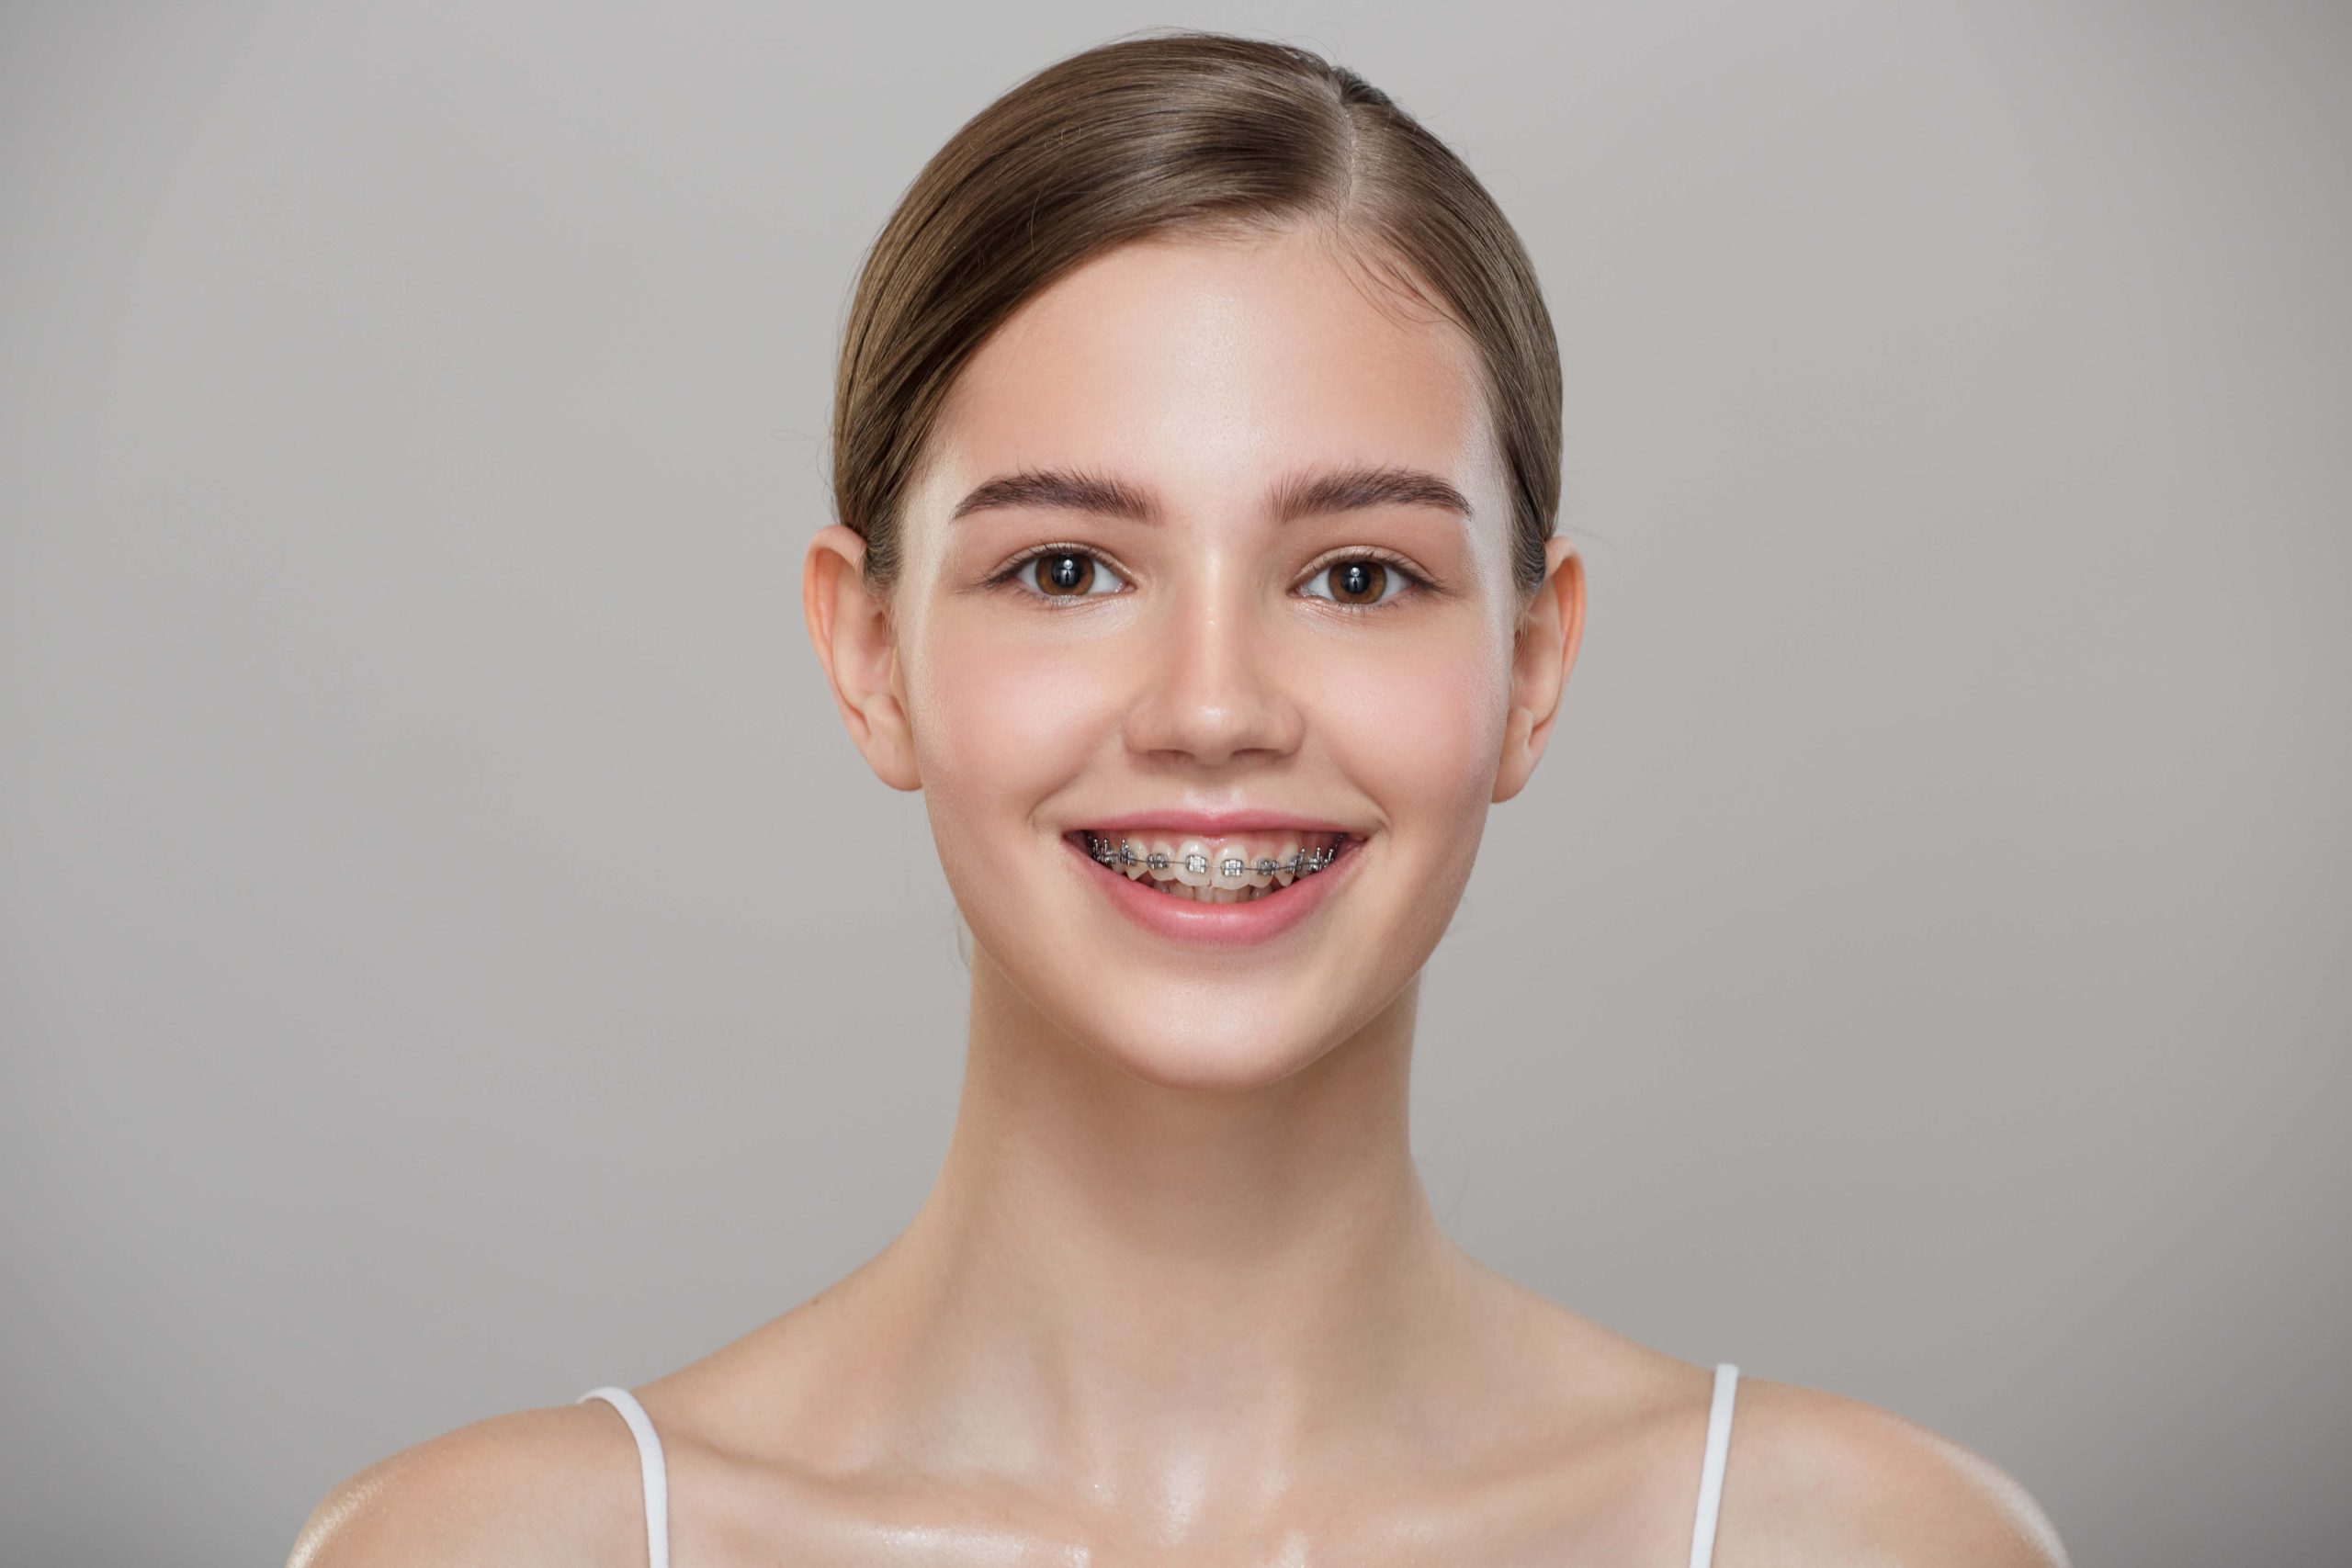 Eficacia de la depilación láser en adolescentes